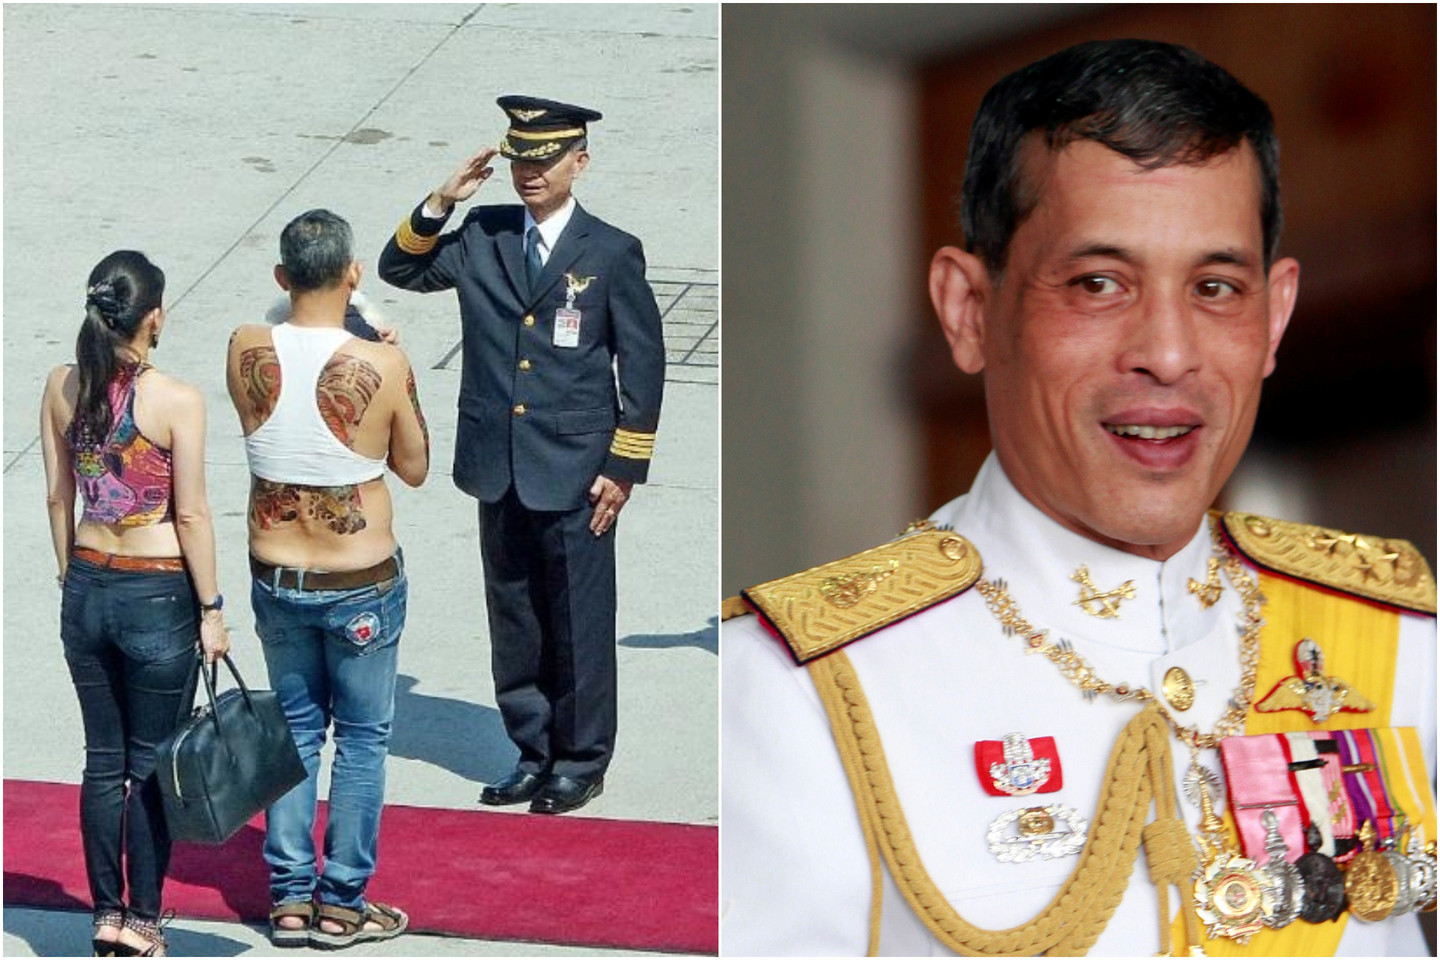 Tailando sostą užimsiantis princas M.Vajiralongkornas yra nekenčiamas šalies gyventojų dėl savo elgesio.<br>lrytas.lt fotomontažas